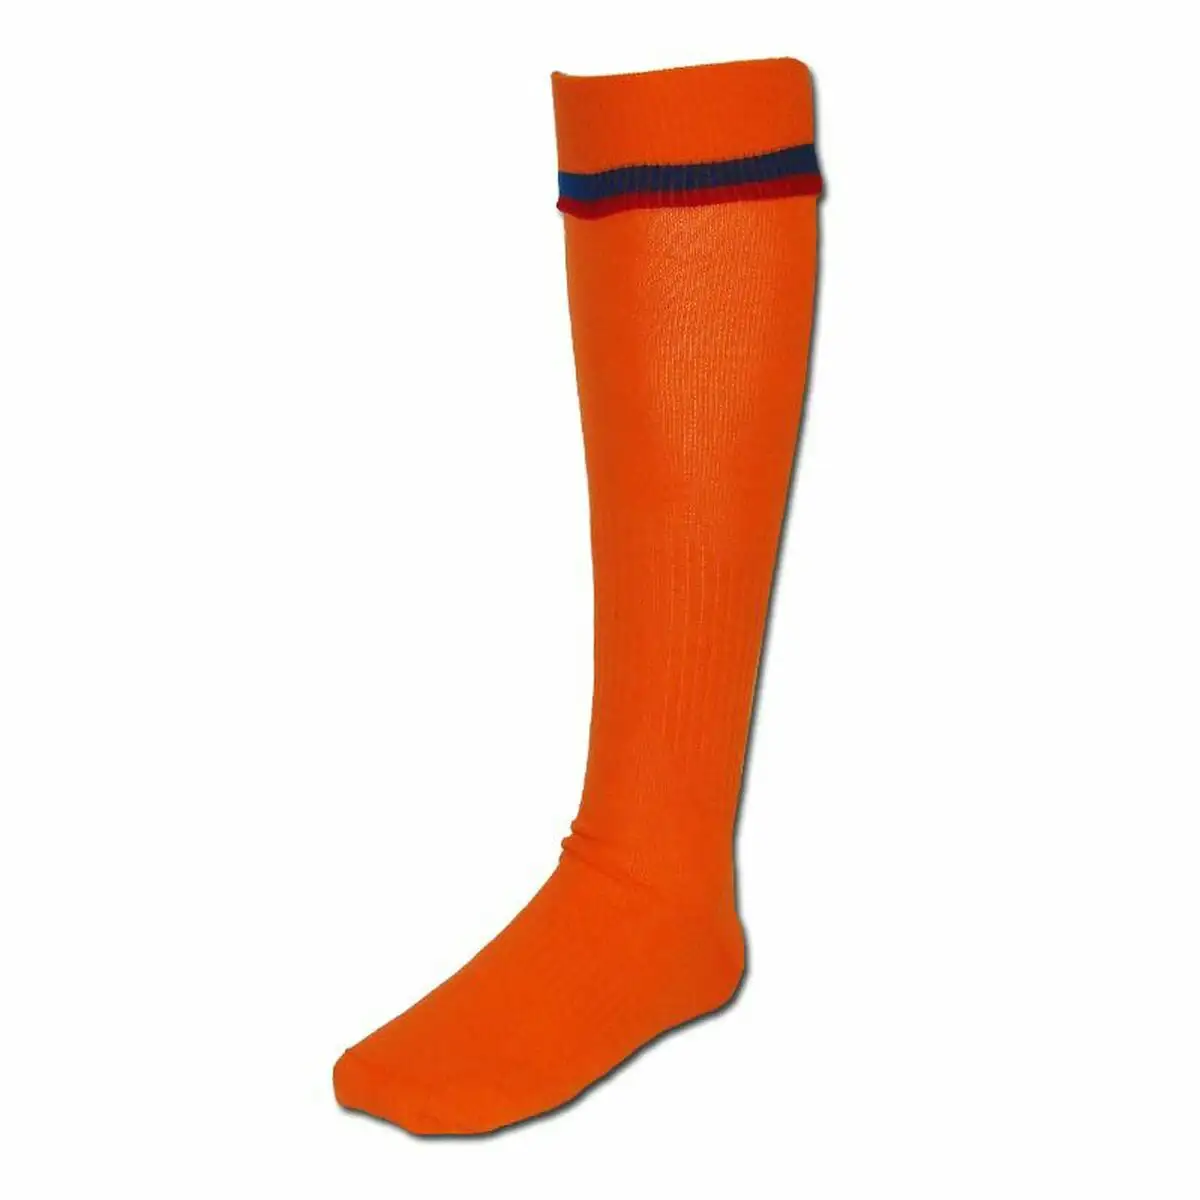 Chaussettes de sport nike fcb away orange_1322. DIAYTAR SENEGAL - Votre Destination pour un Shopping Réfléchi. Découvrez notre gamme variée et choisissez des produits qui correspondent à vos valeurs et à votre style de vie.